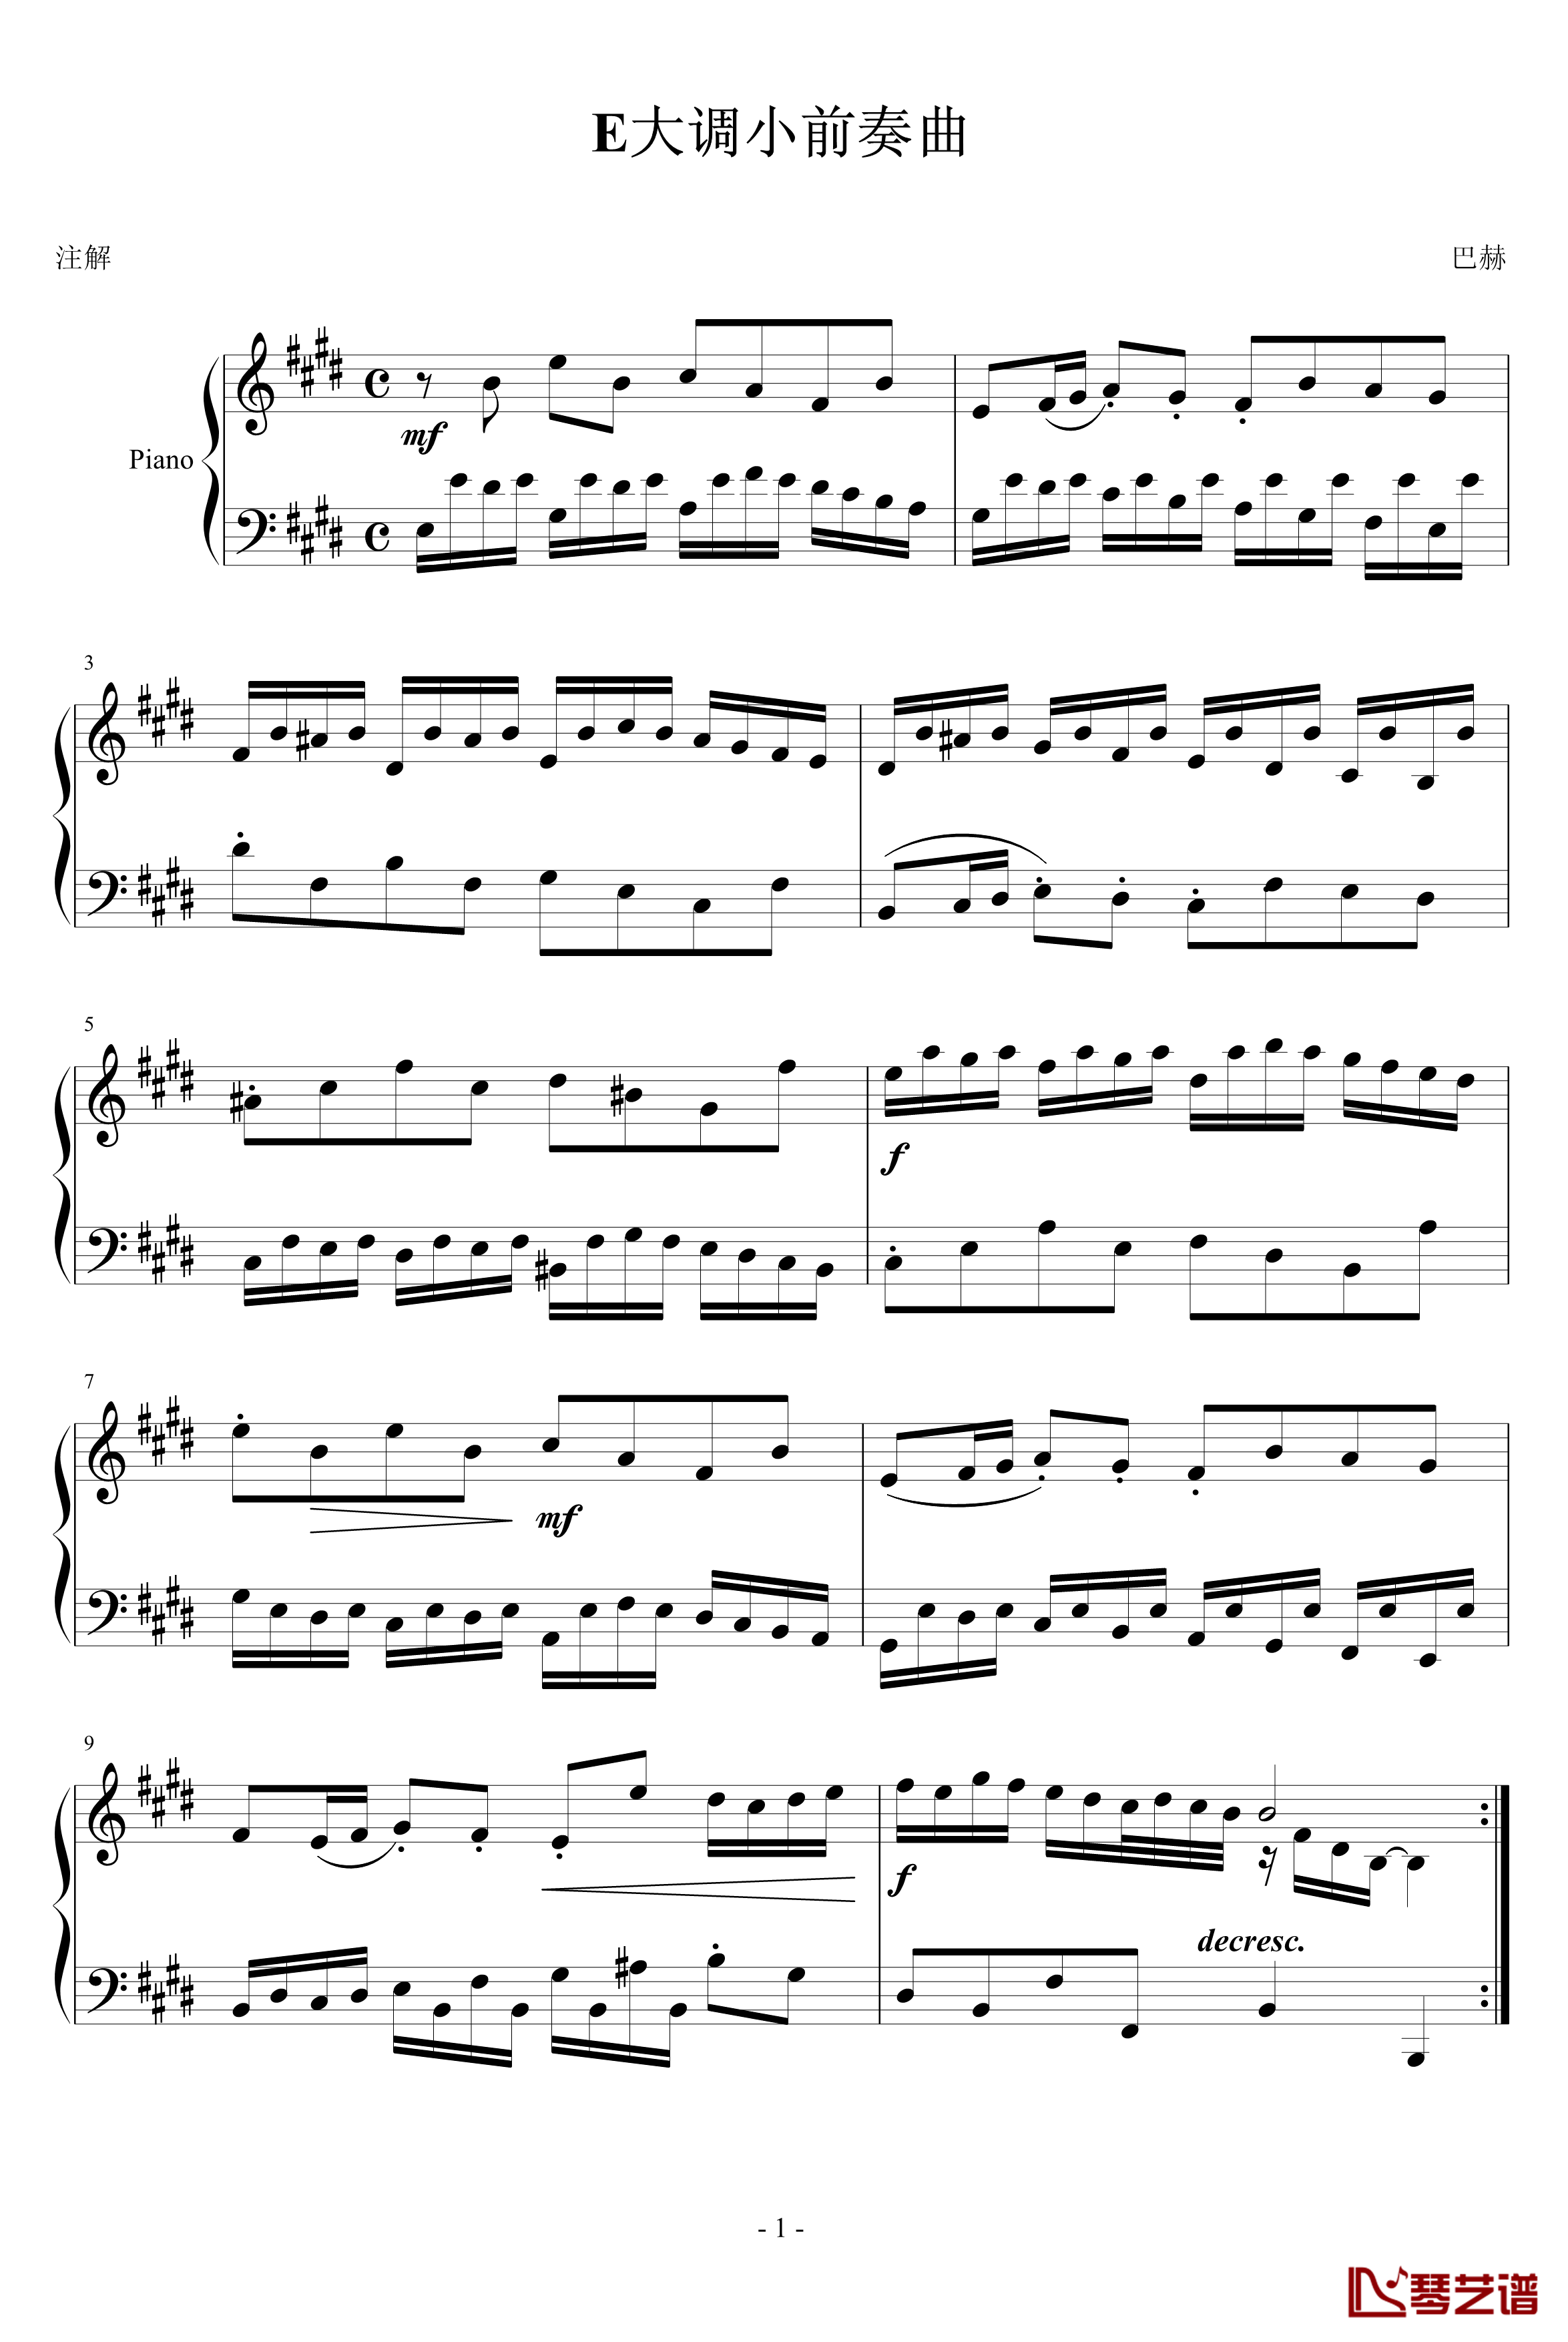 E大调小前奏曲钢琴谱-巴赫-P.E.Bach1